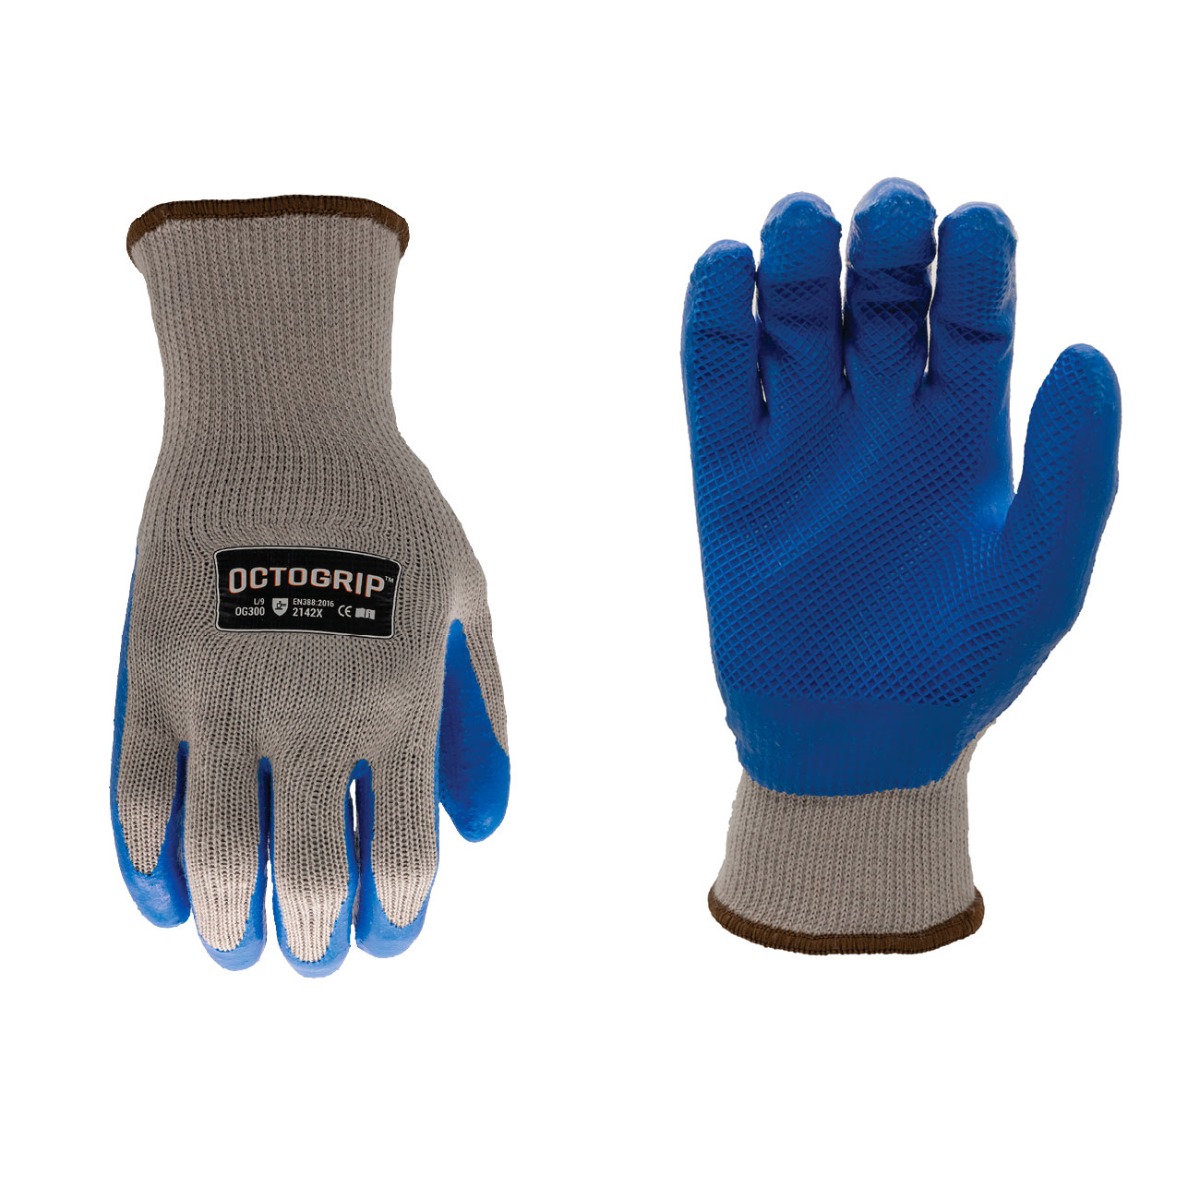 HD Series Light Weight Octogrip Grip Glove 10g - Size L